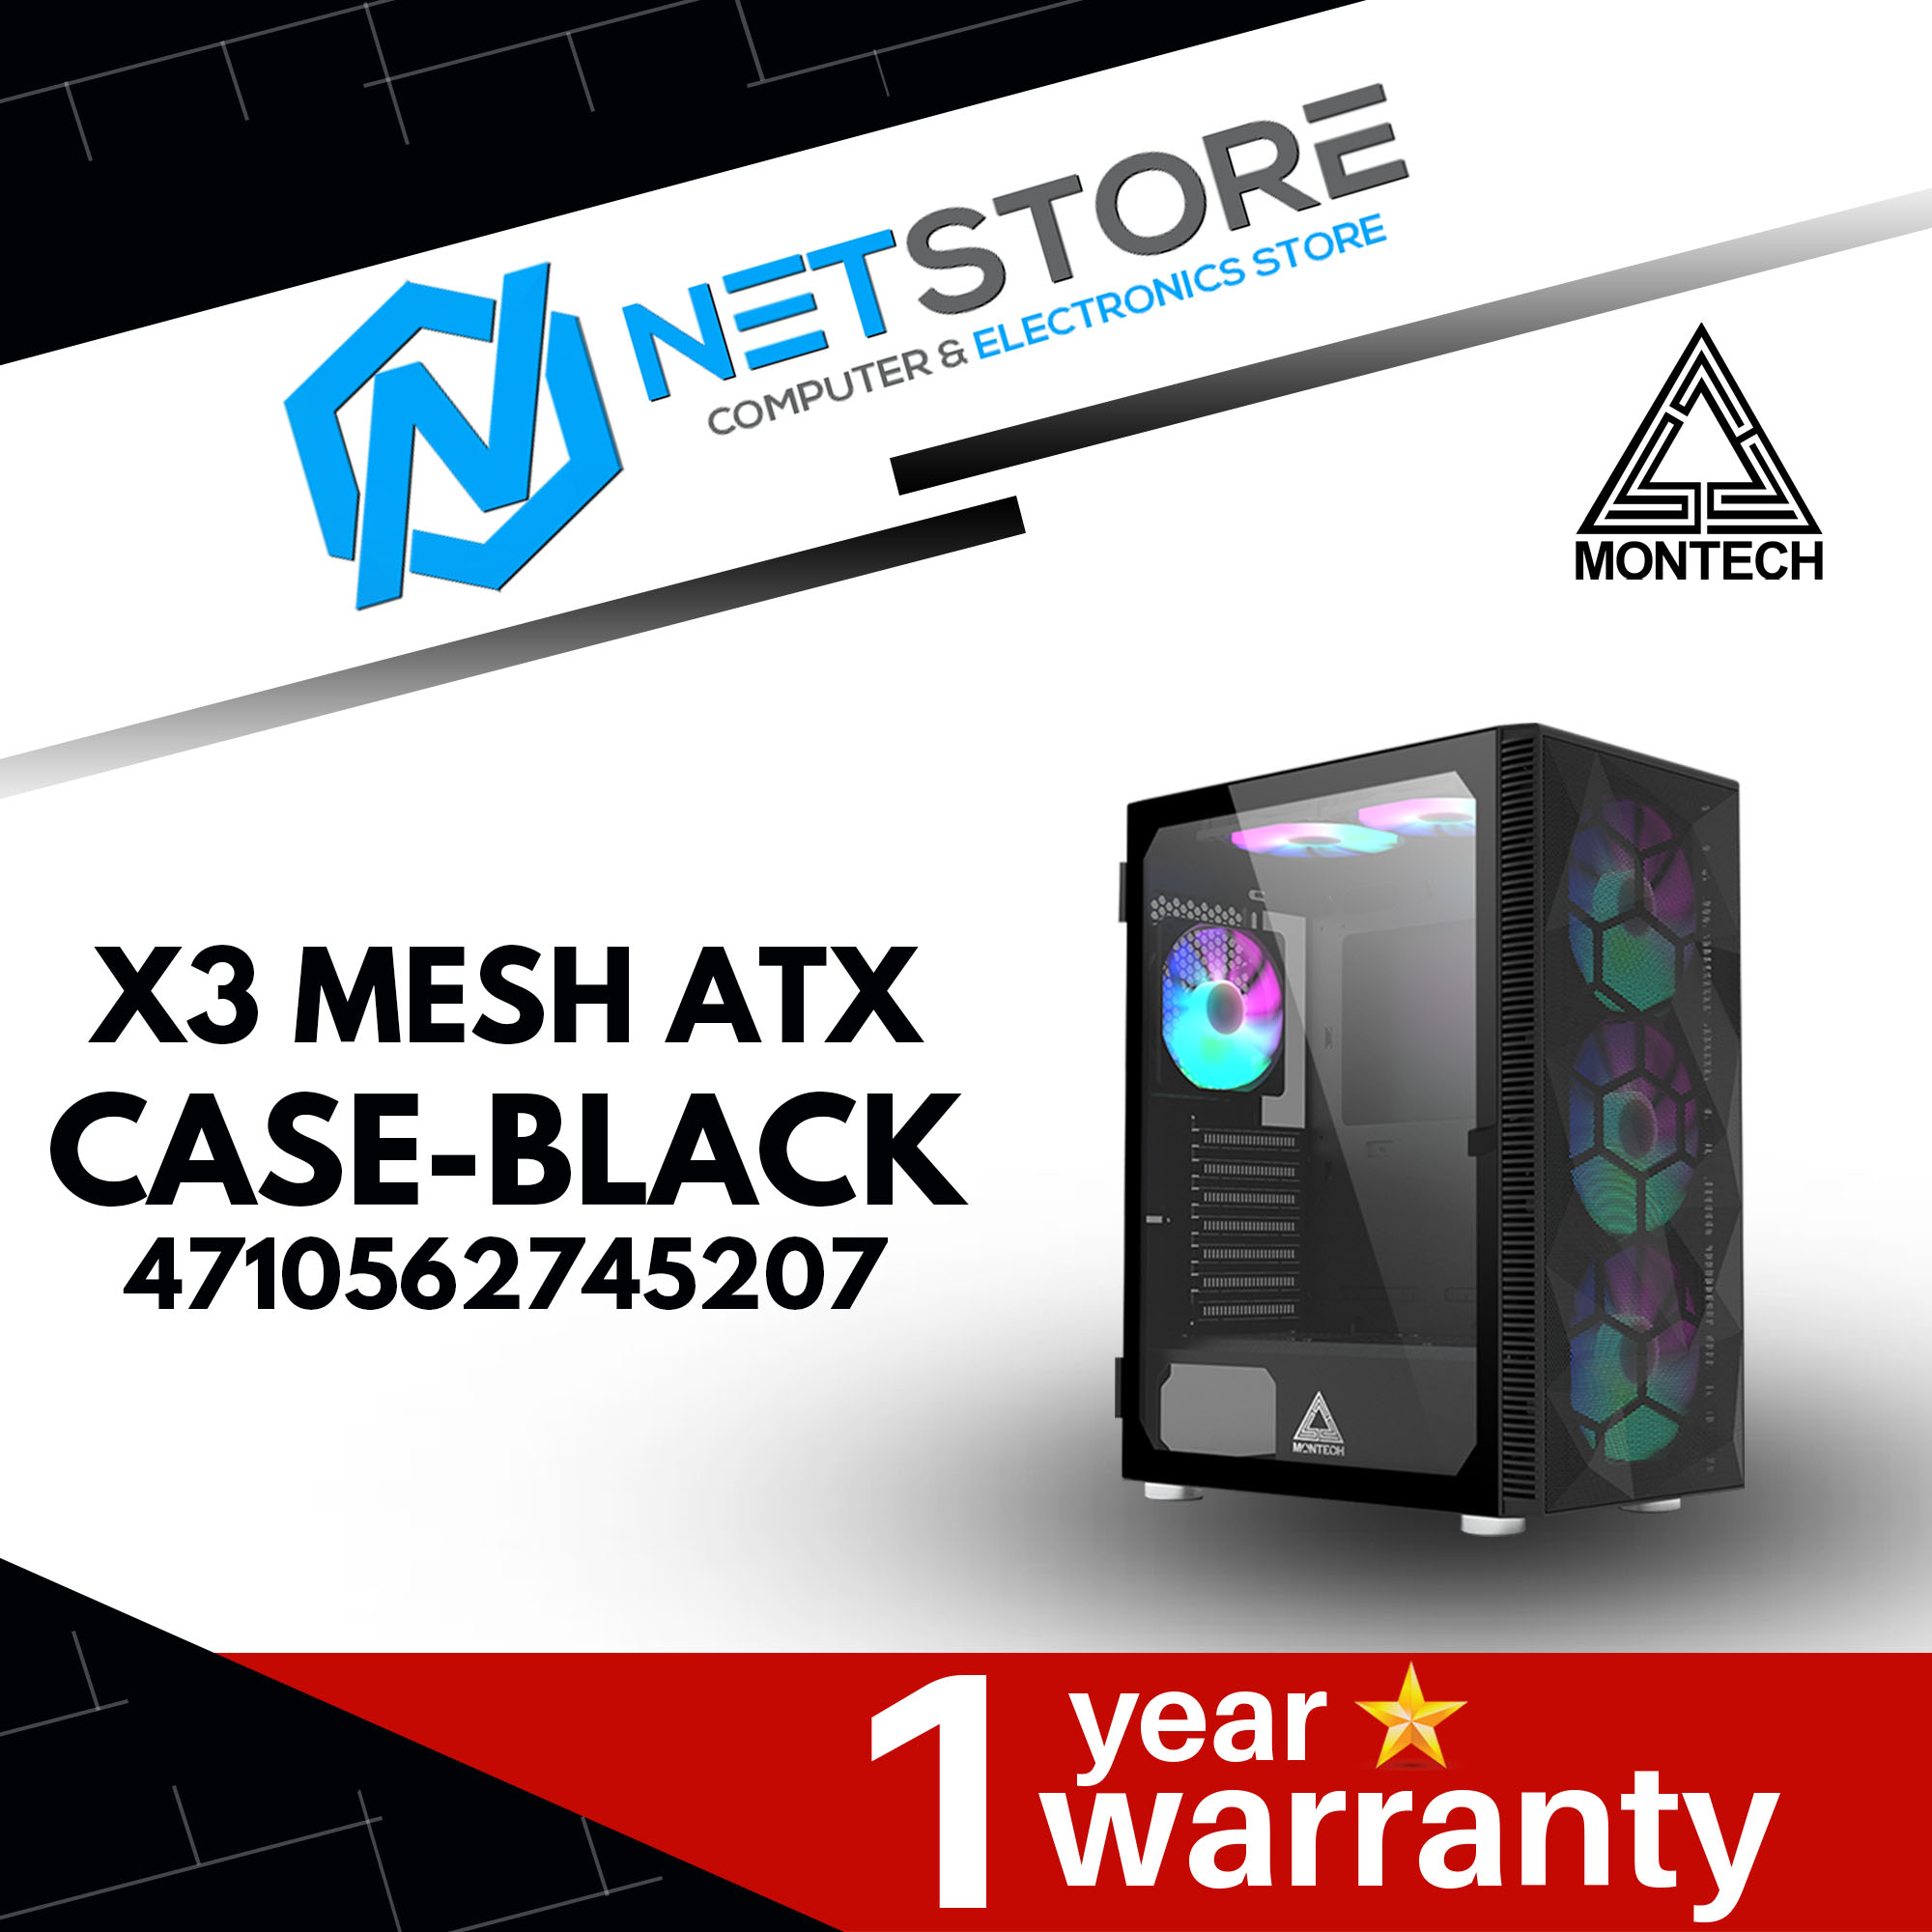 MONTECH X3 MESH ATX CASE - BLACK - 4710562745207